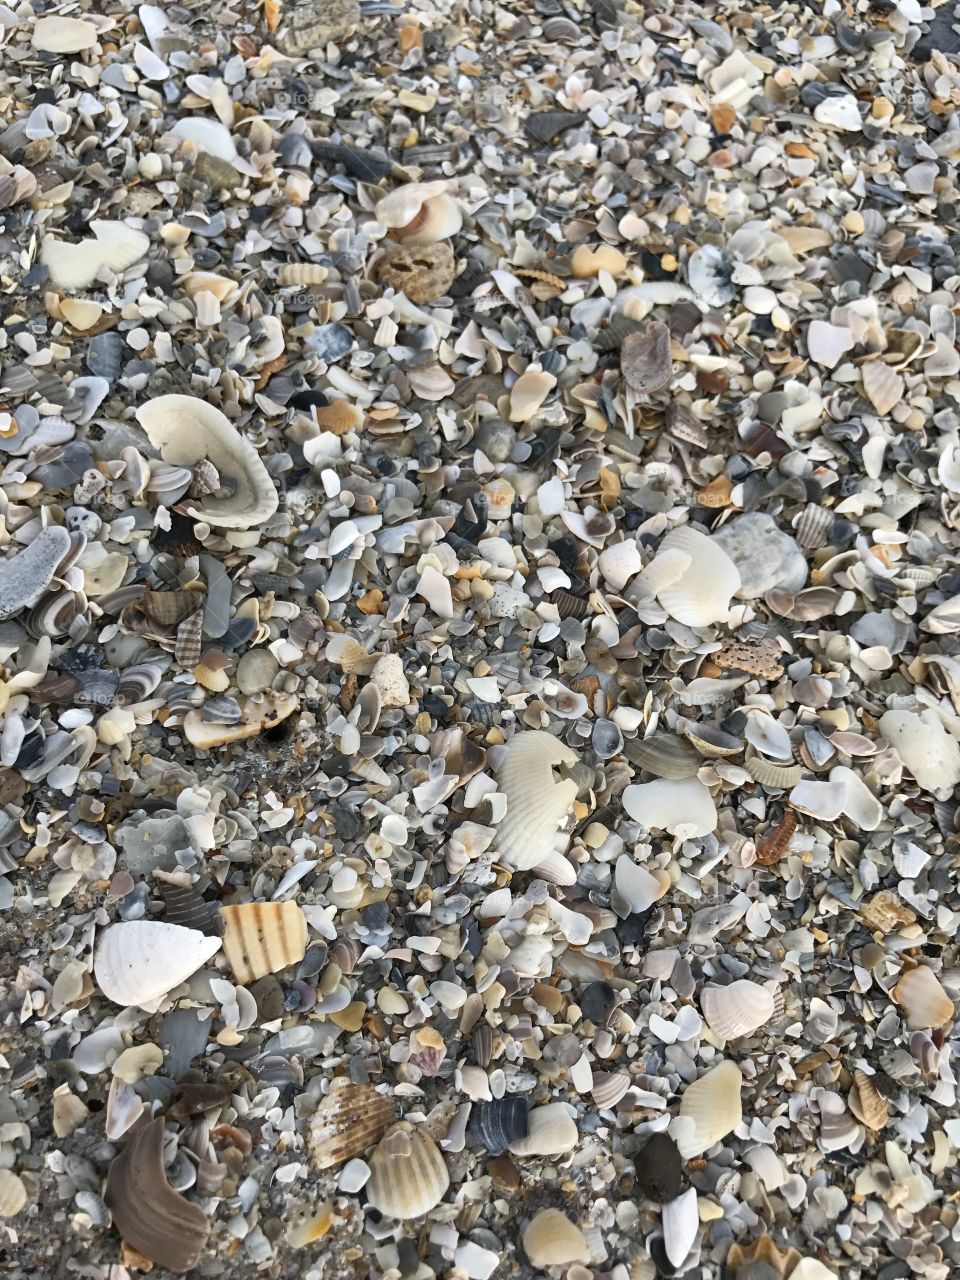 So many shells